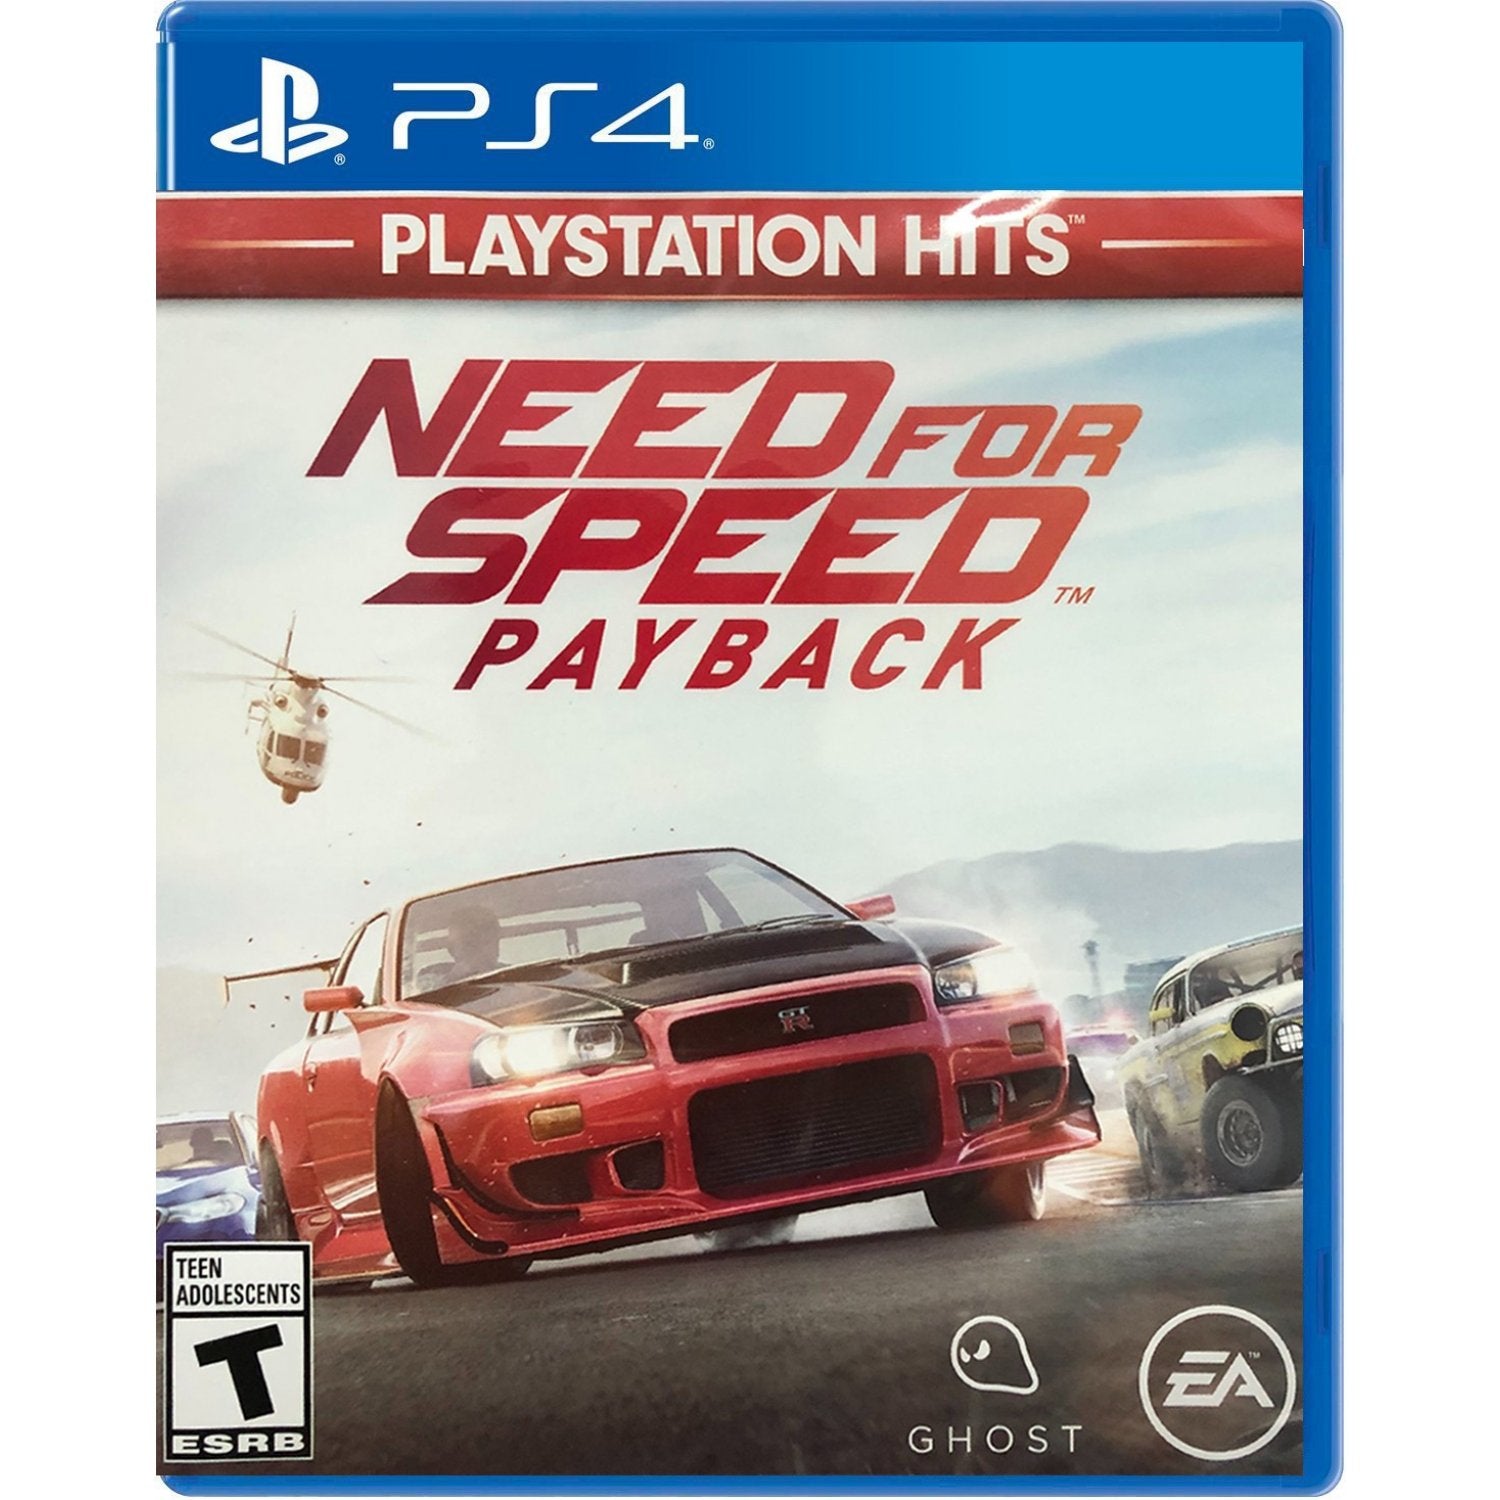 Nfs payback ps4. NFS Payback ps3. NFS ps4. Need for Speed (ps4).